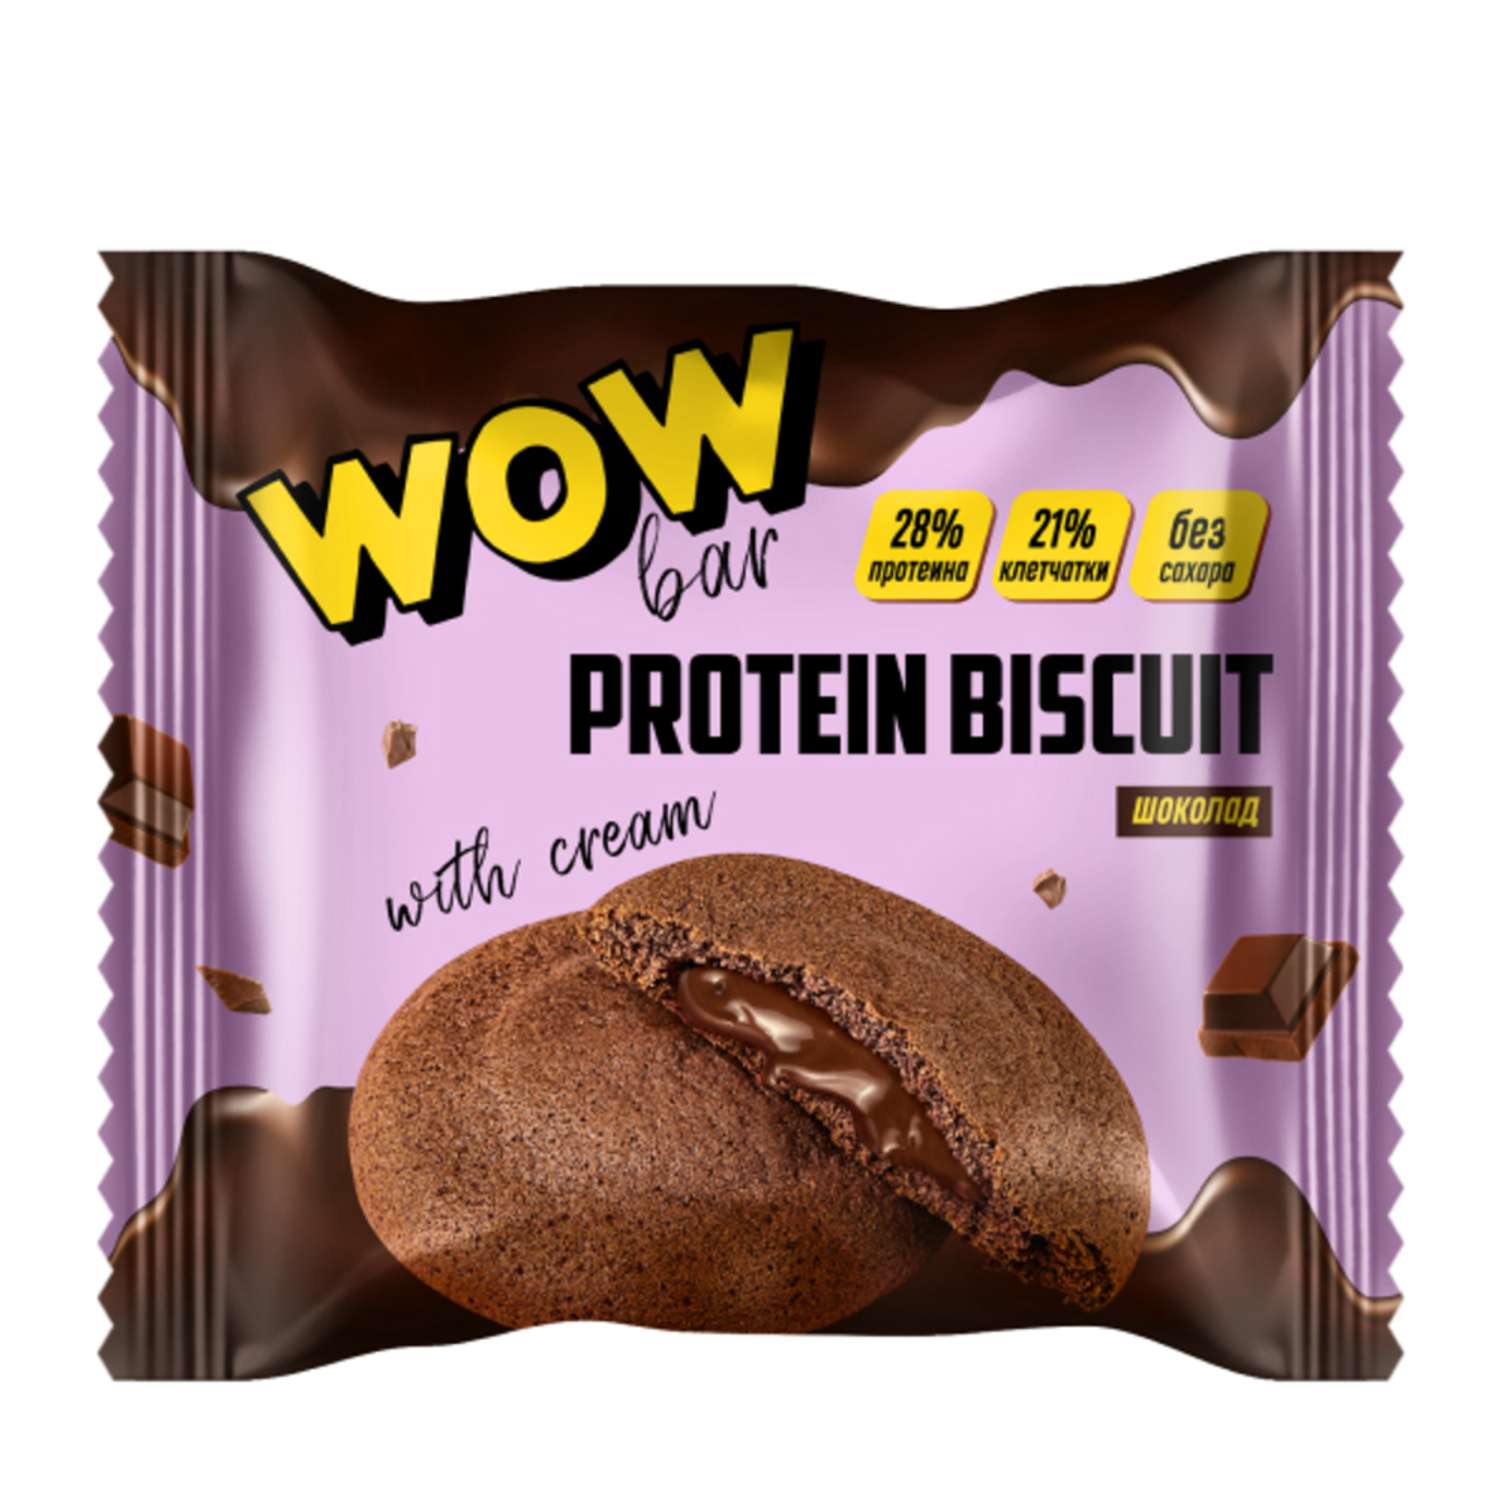 Протеиновое печенье Prime Kraft wowbar protein biscuit с кремовой начинкой со вкусом «Шоколад» 10 шт x 40 гр - фото 1